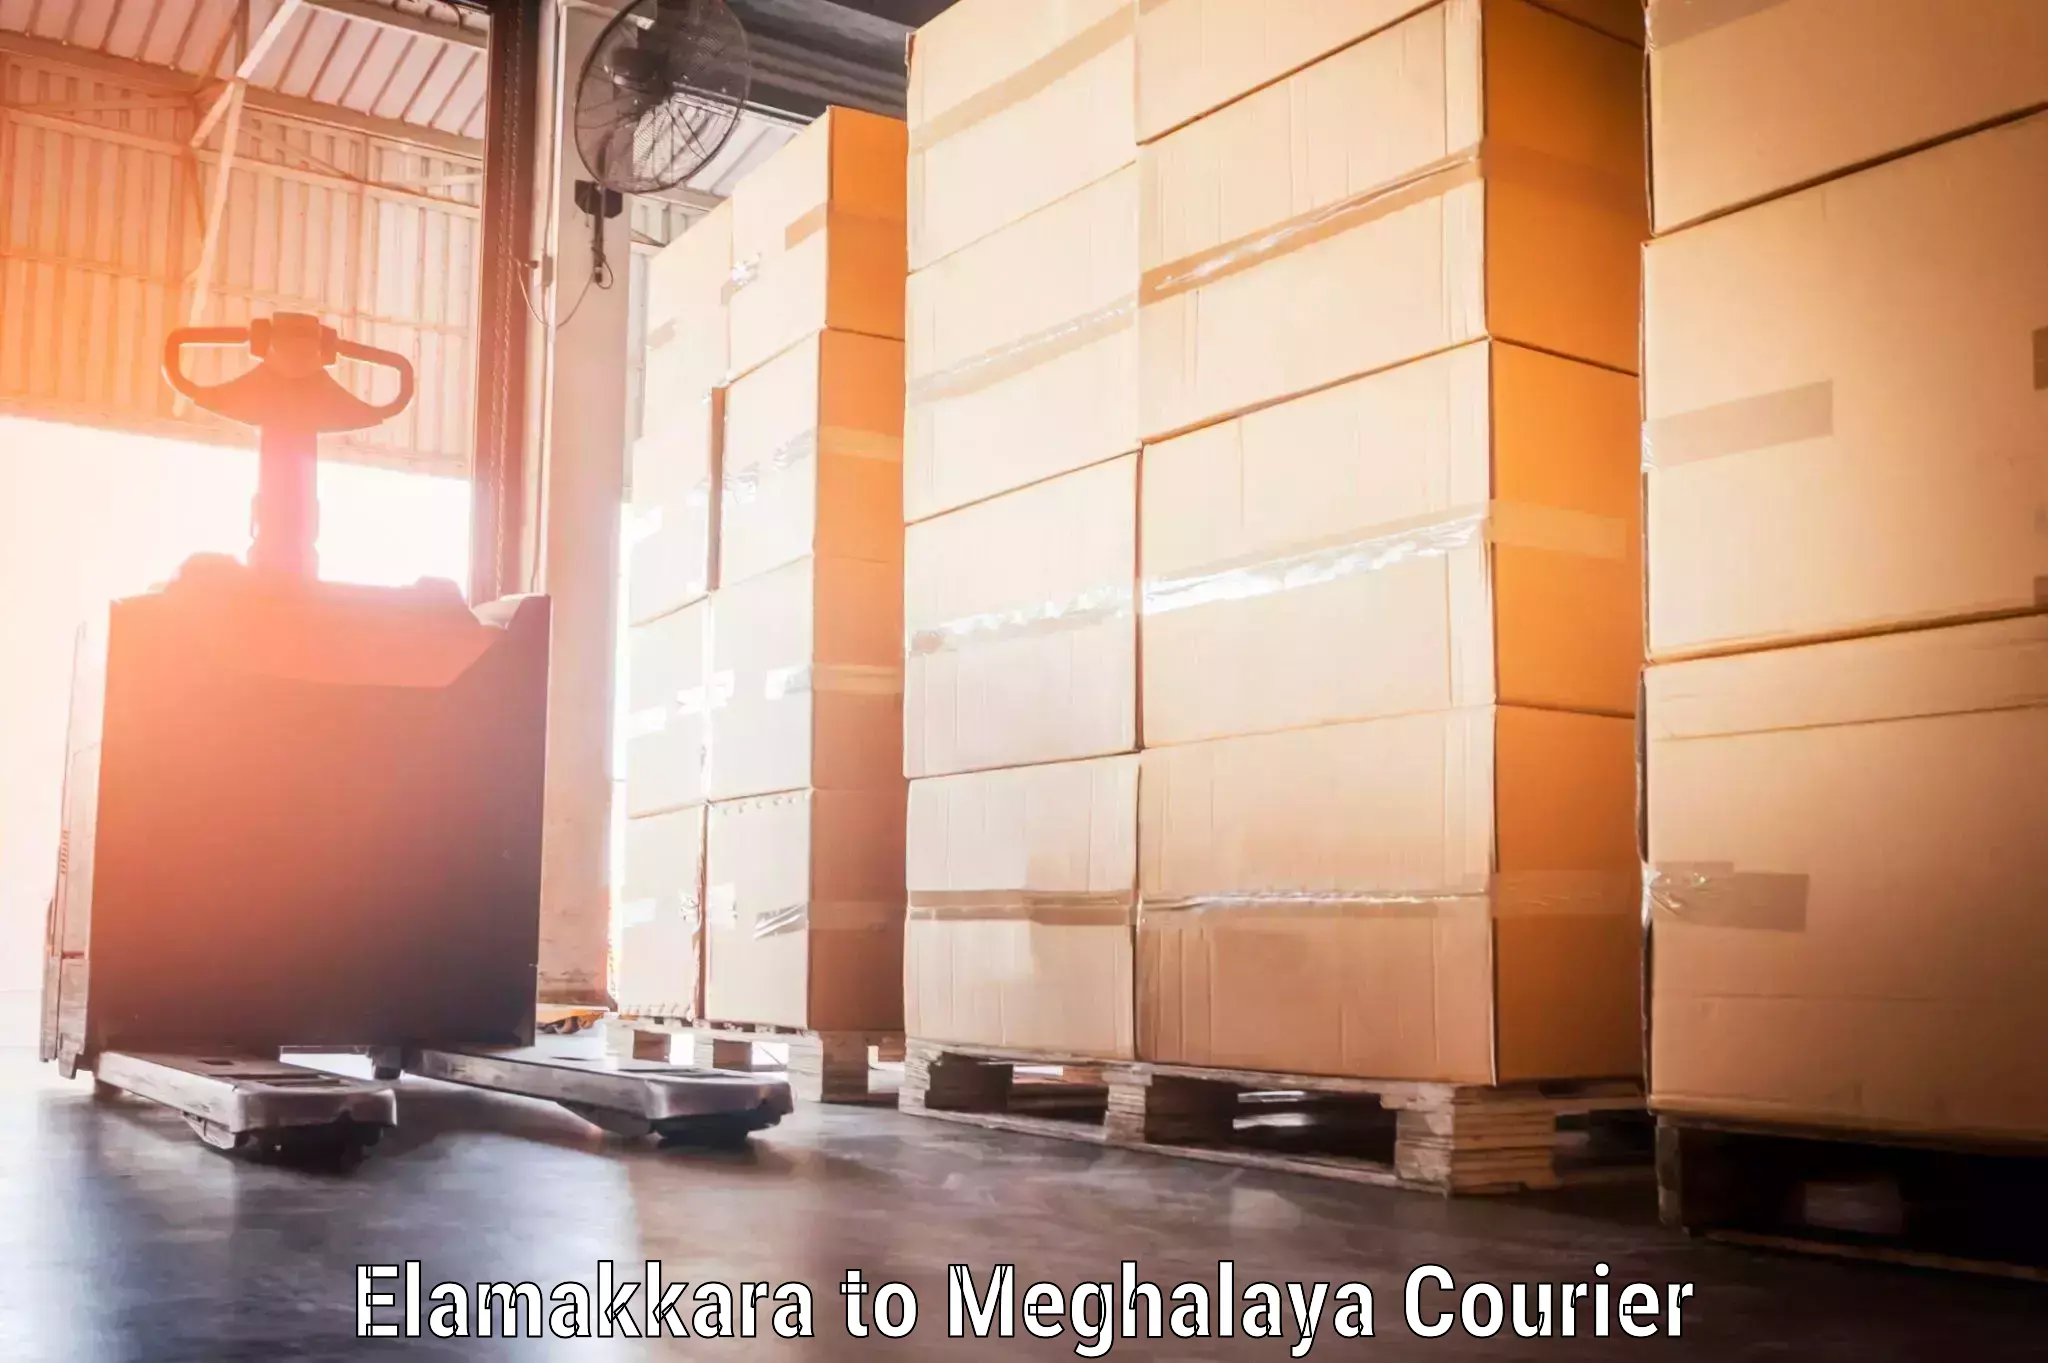 Luggage courier services Elamakkara to Meghalaya